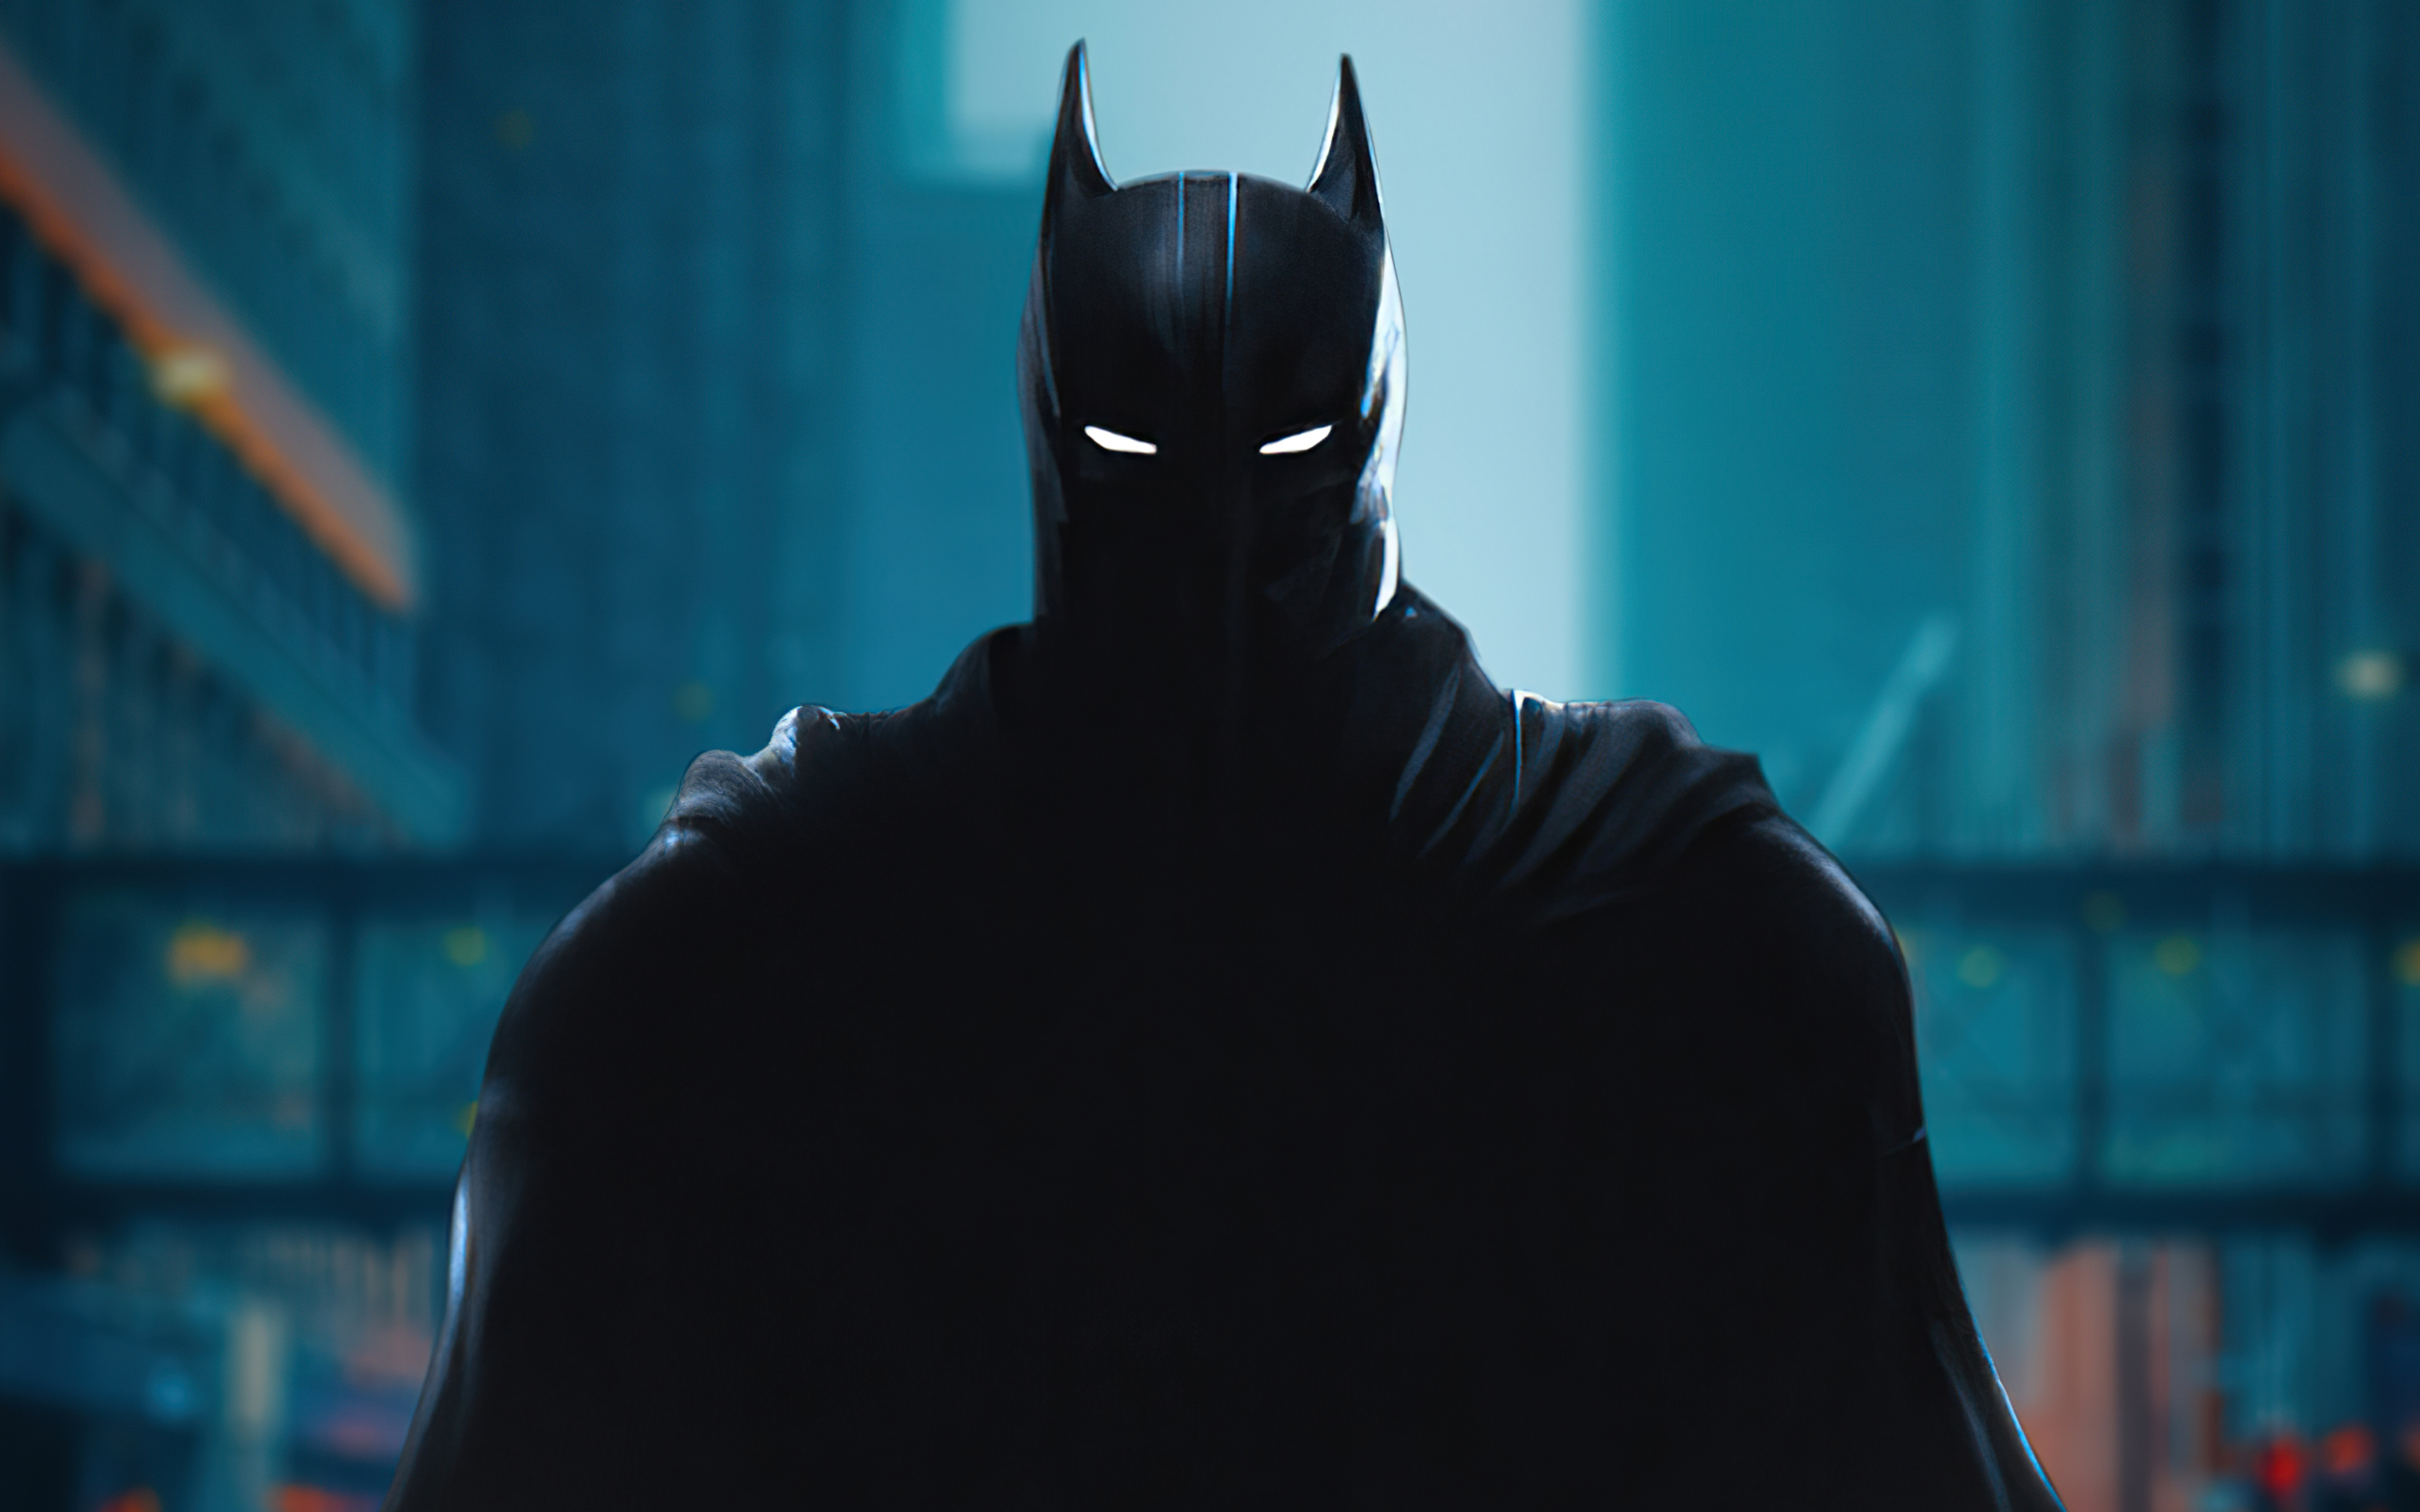 Batman 2021 DC Comics Batman Wallpaper - Resolution:3840x2400 - ID:1198519  